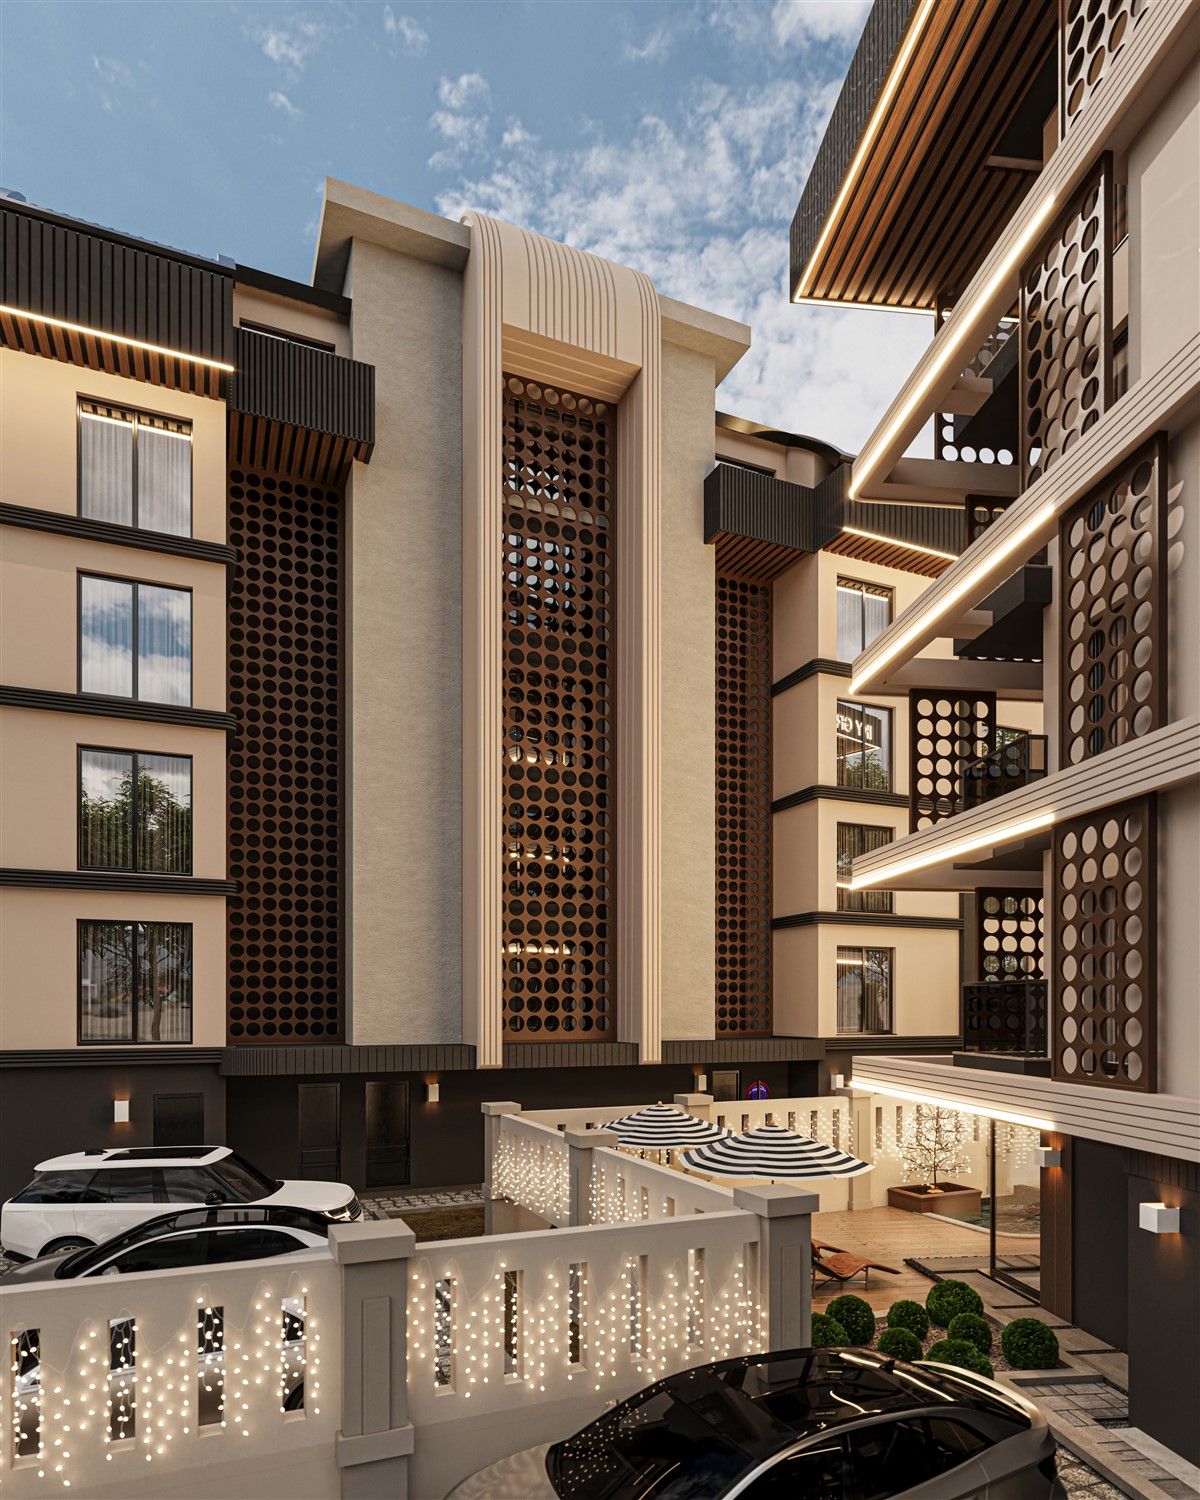 New apartments project in prestigious Oba district